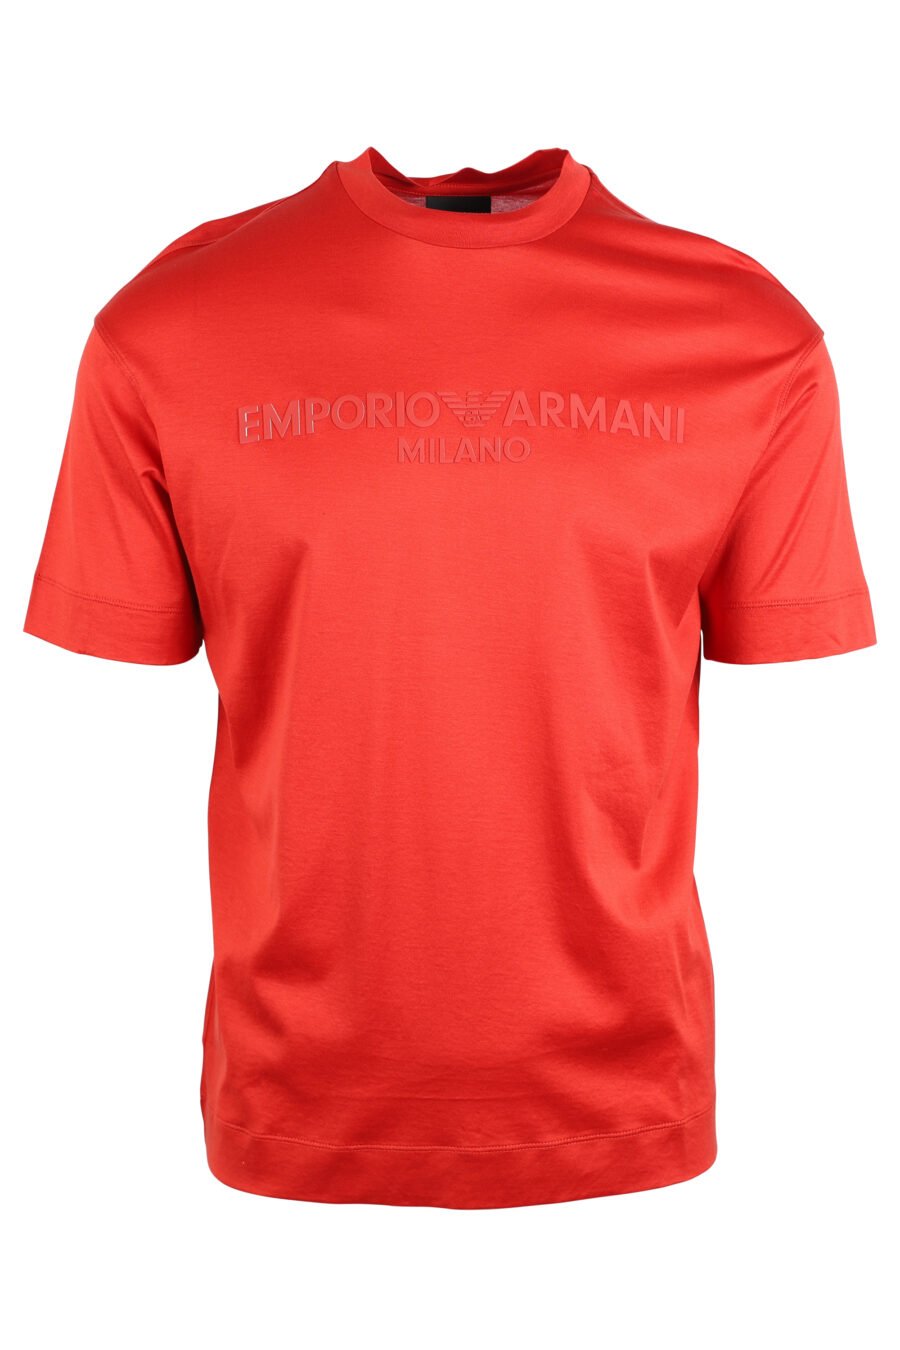 T-shirt rouge avec maxilogo monochrome - IMG 4747